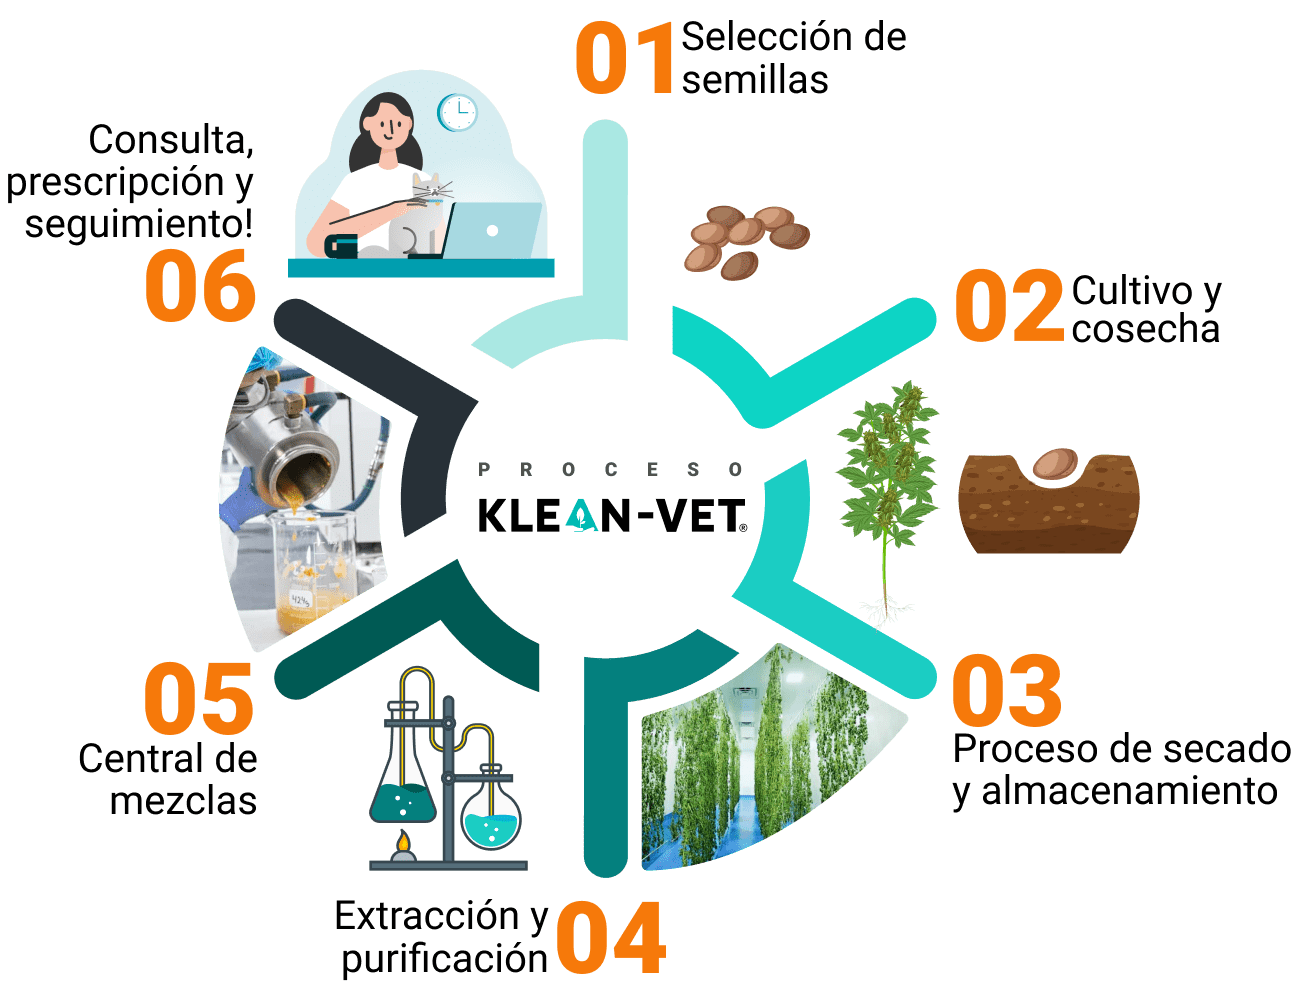 formulaciones magistrales Klean-vet®